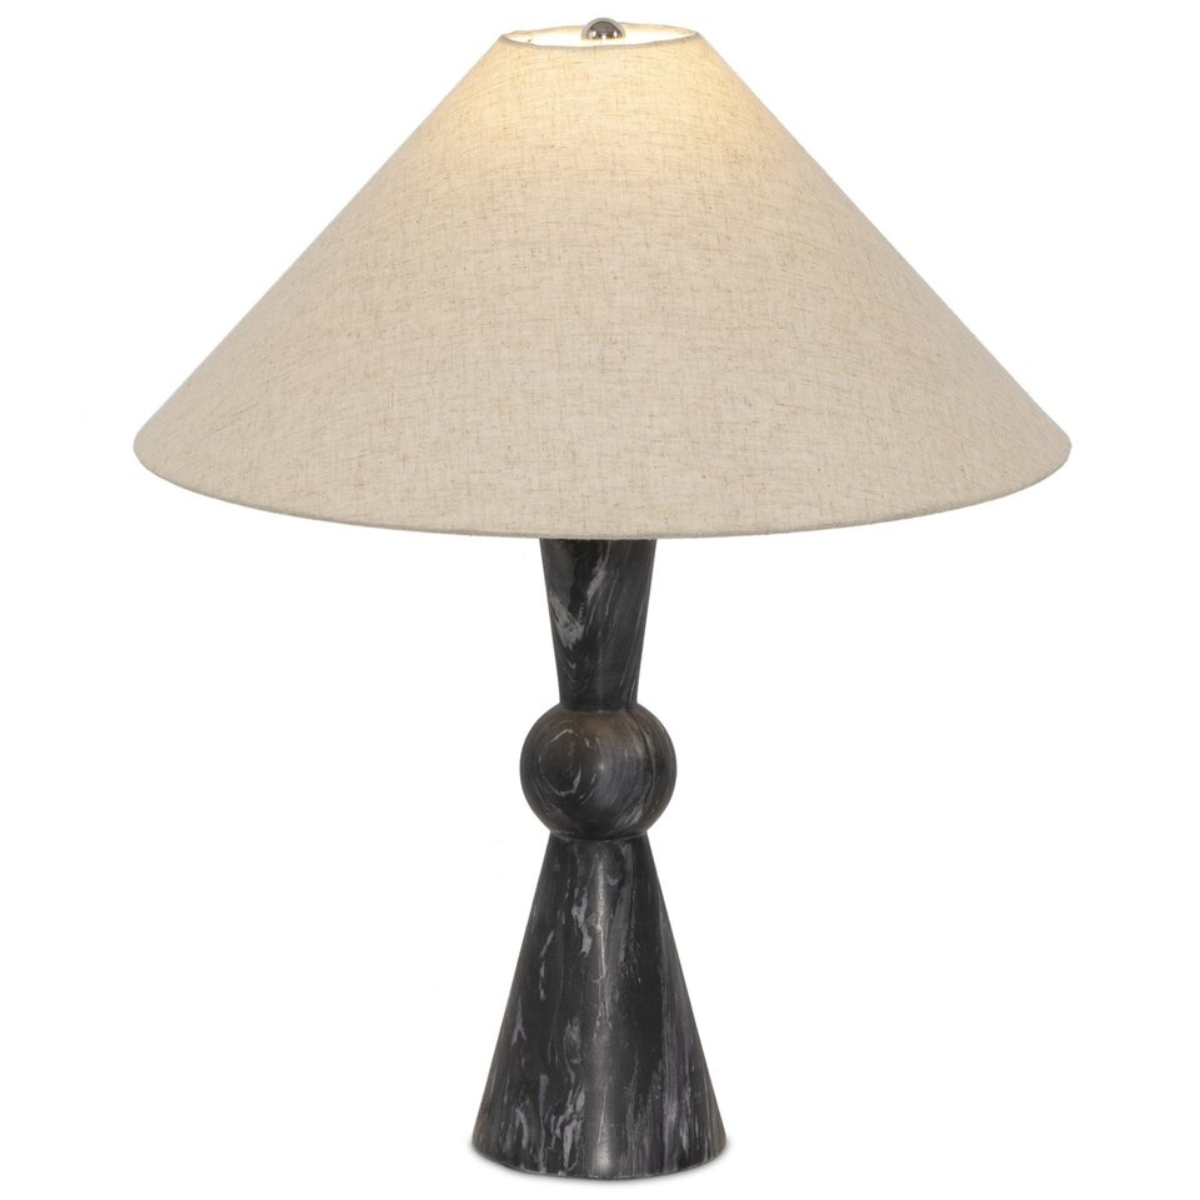 Bibianna Table Lamp